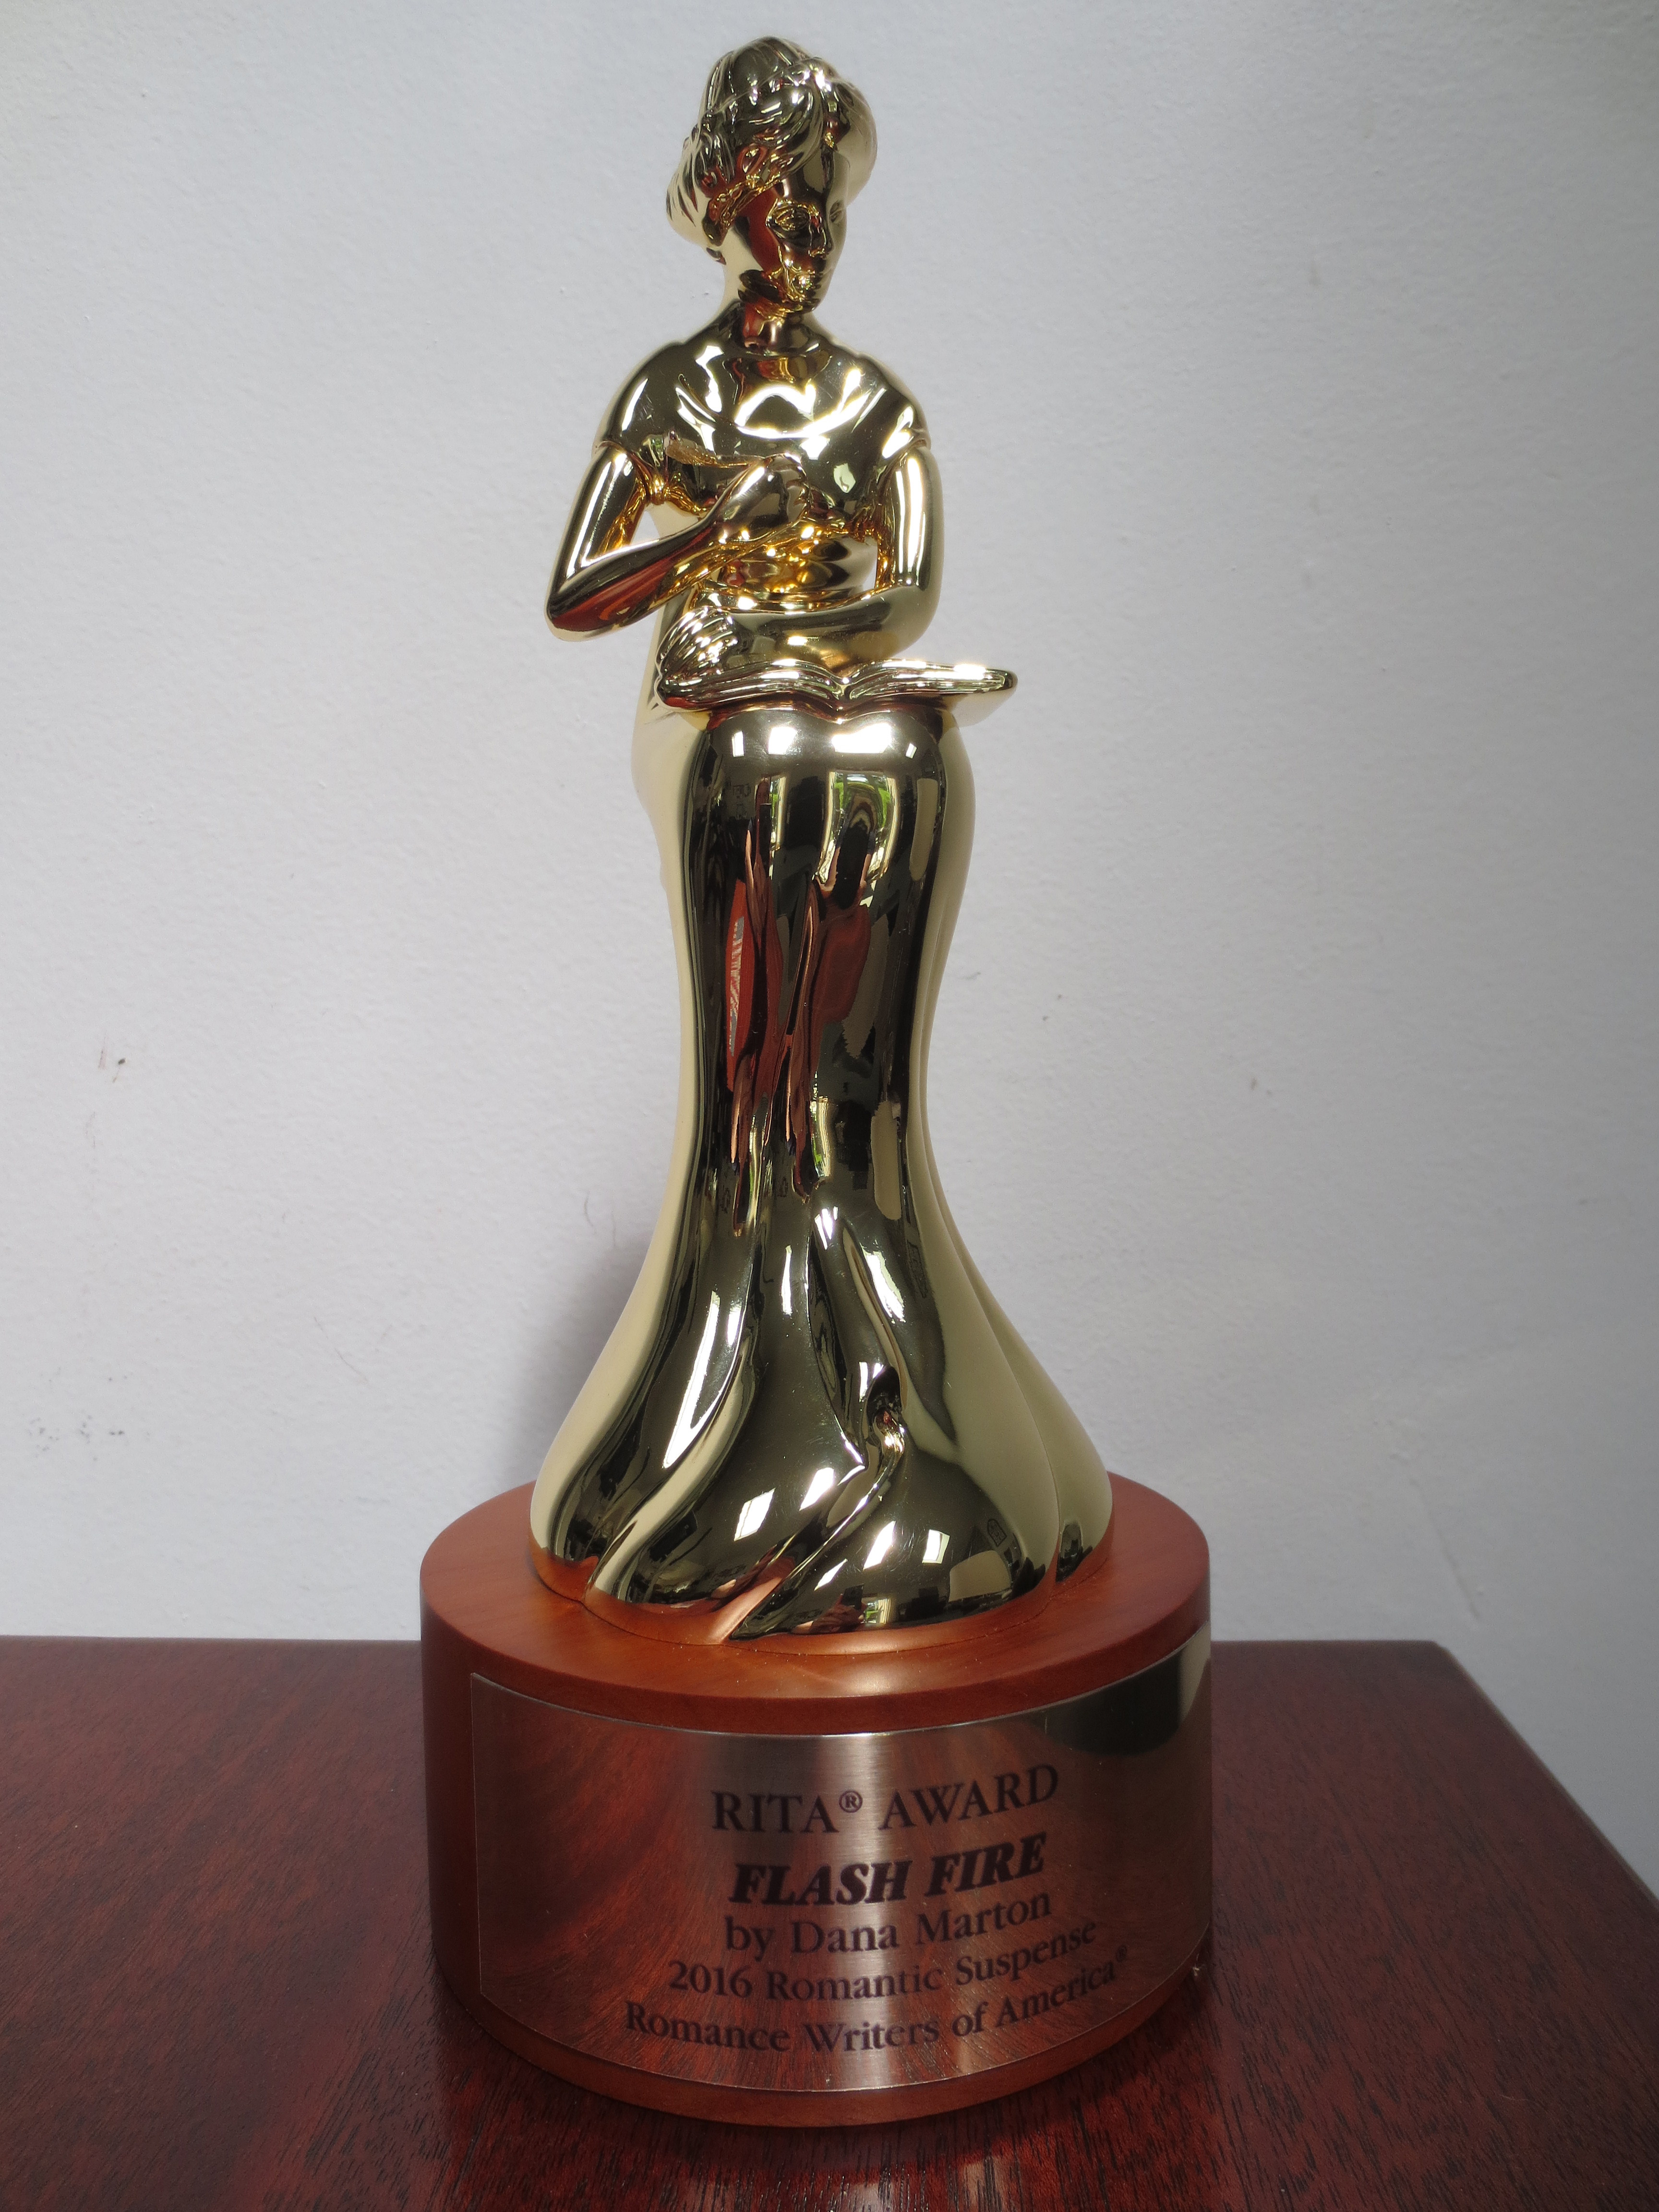 Rita Award